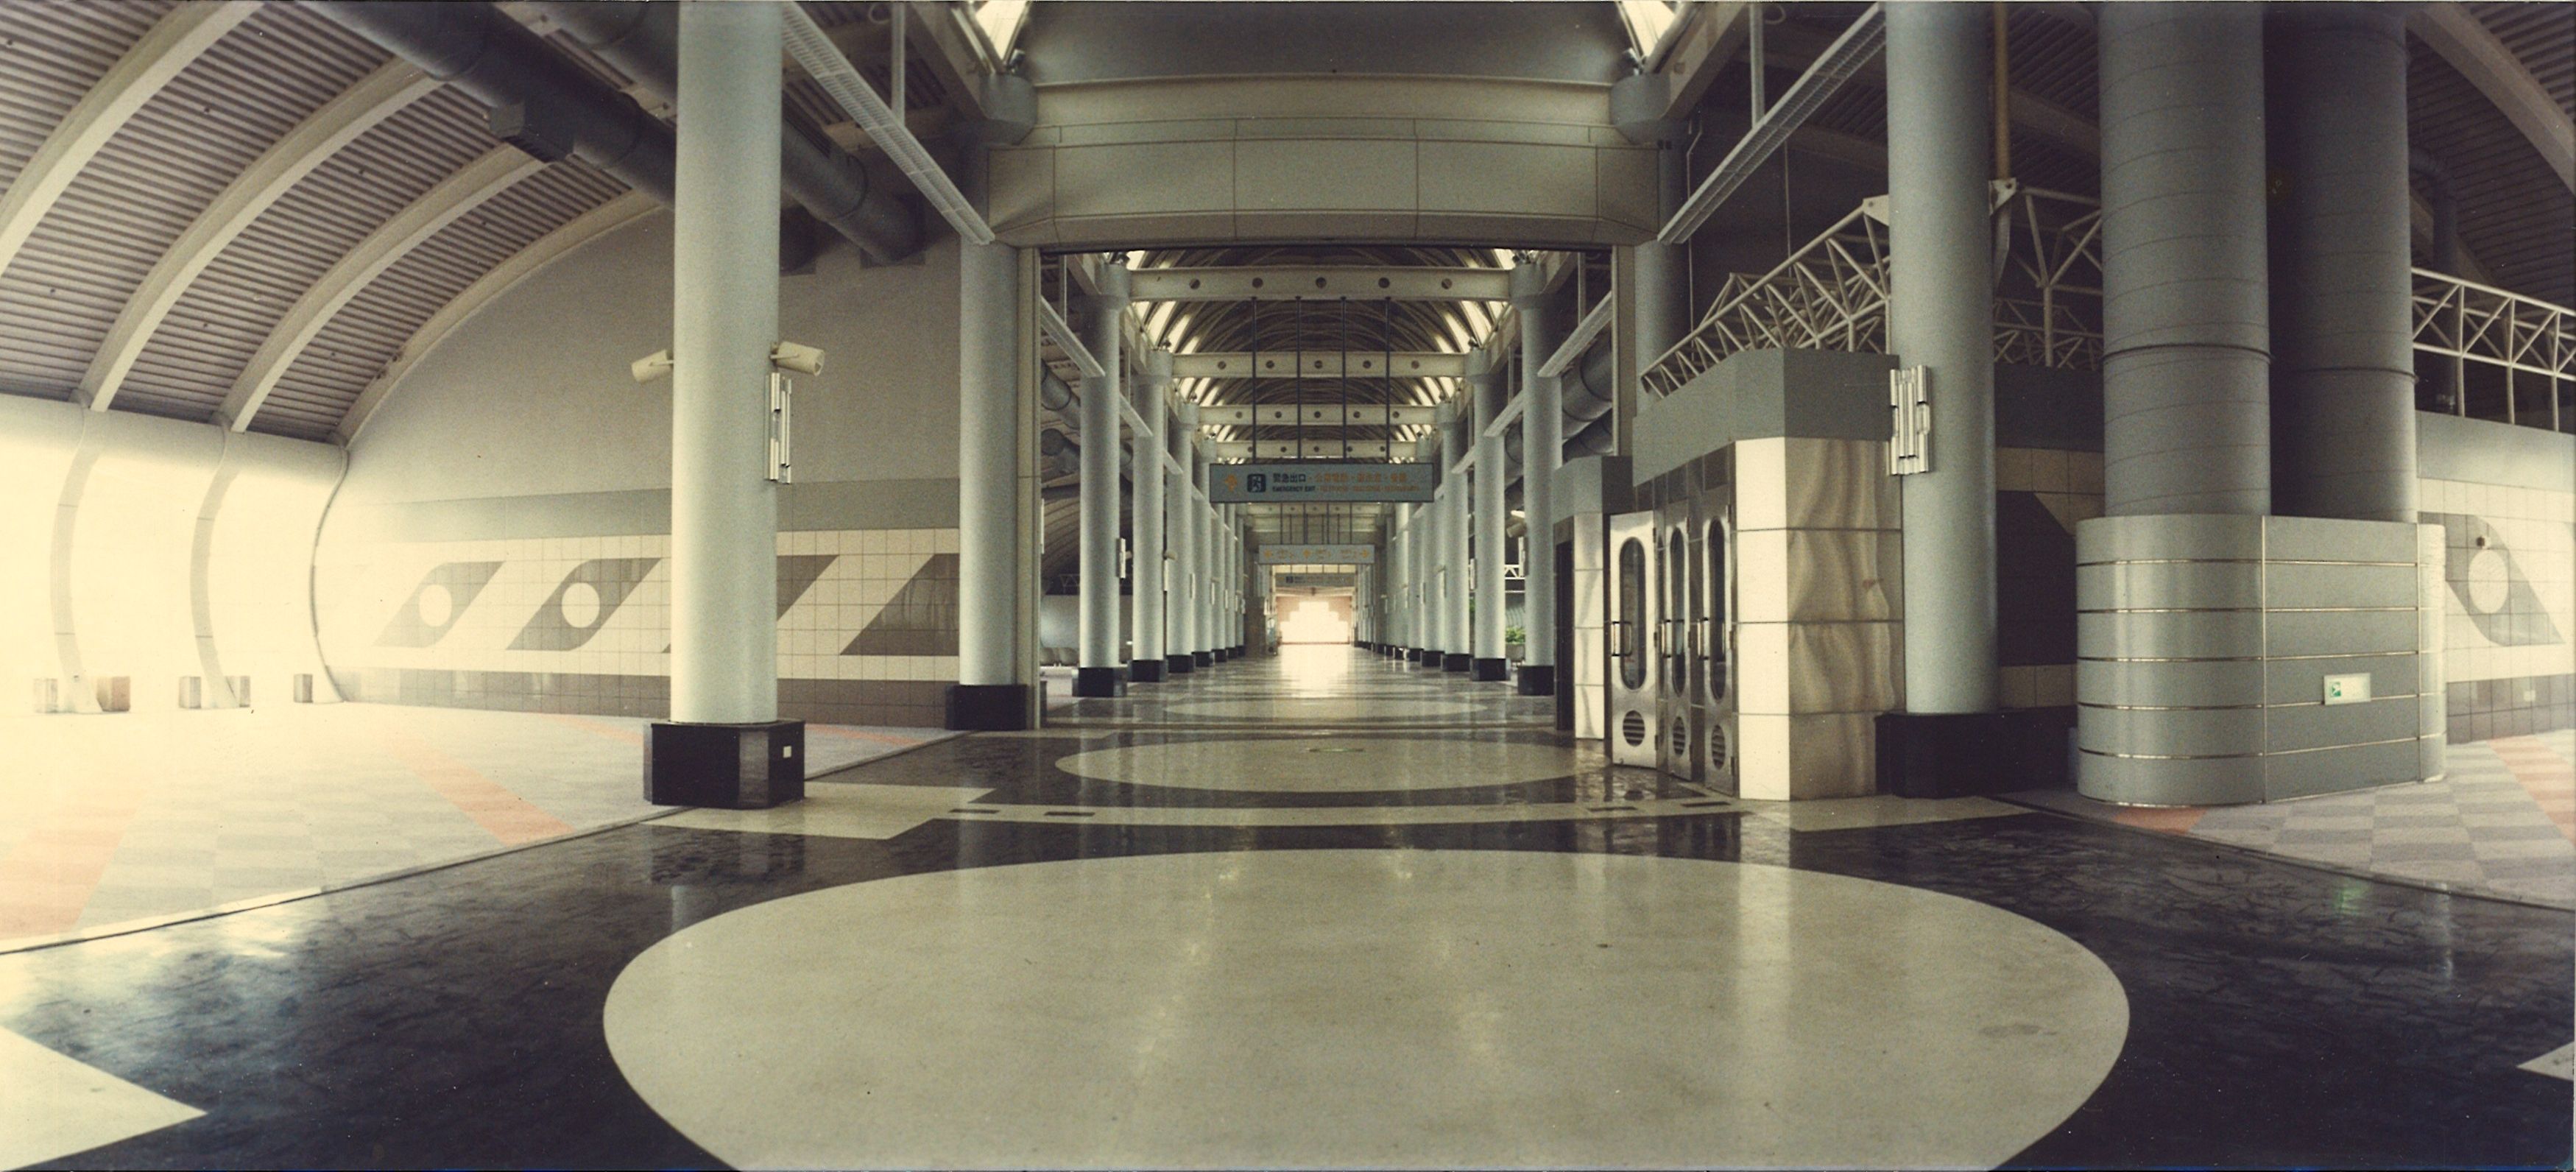 高雄國際航空站國際線航廈86年內候機室完工